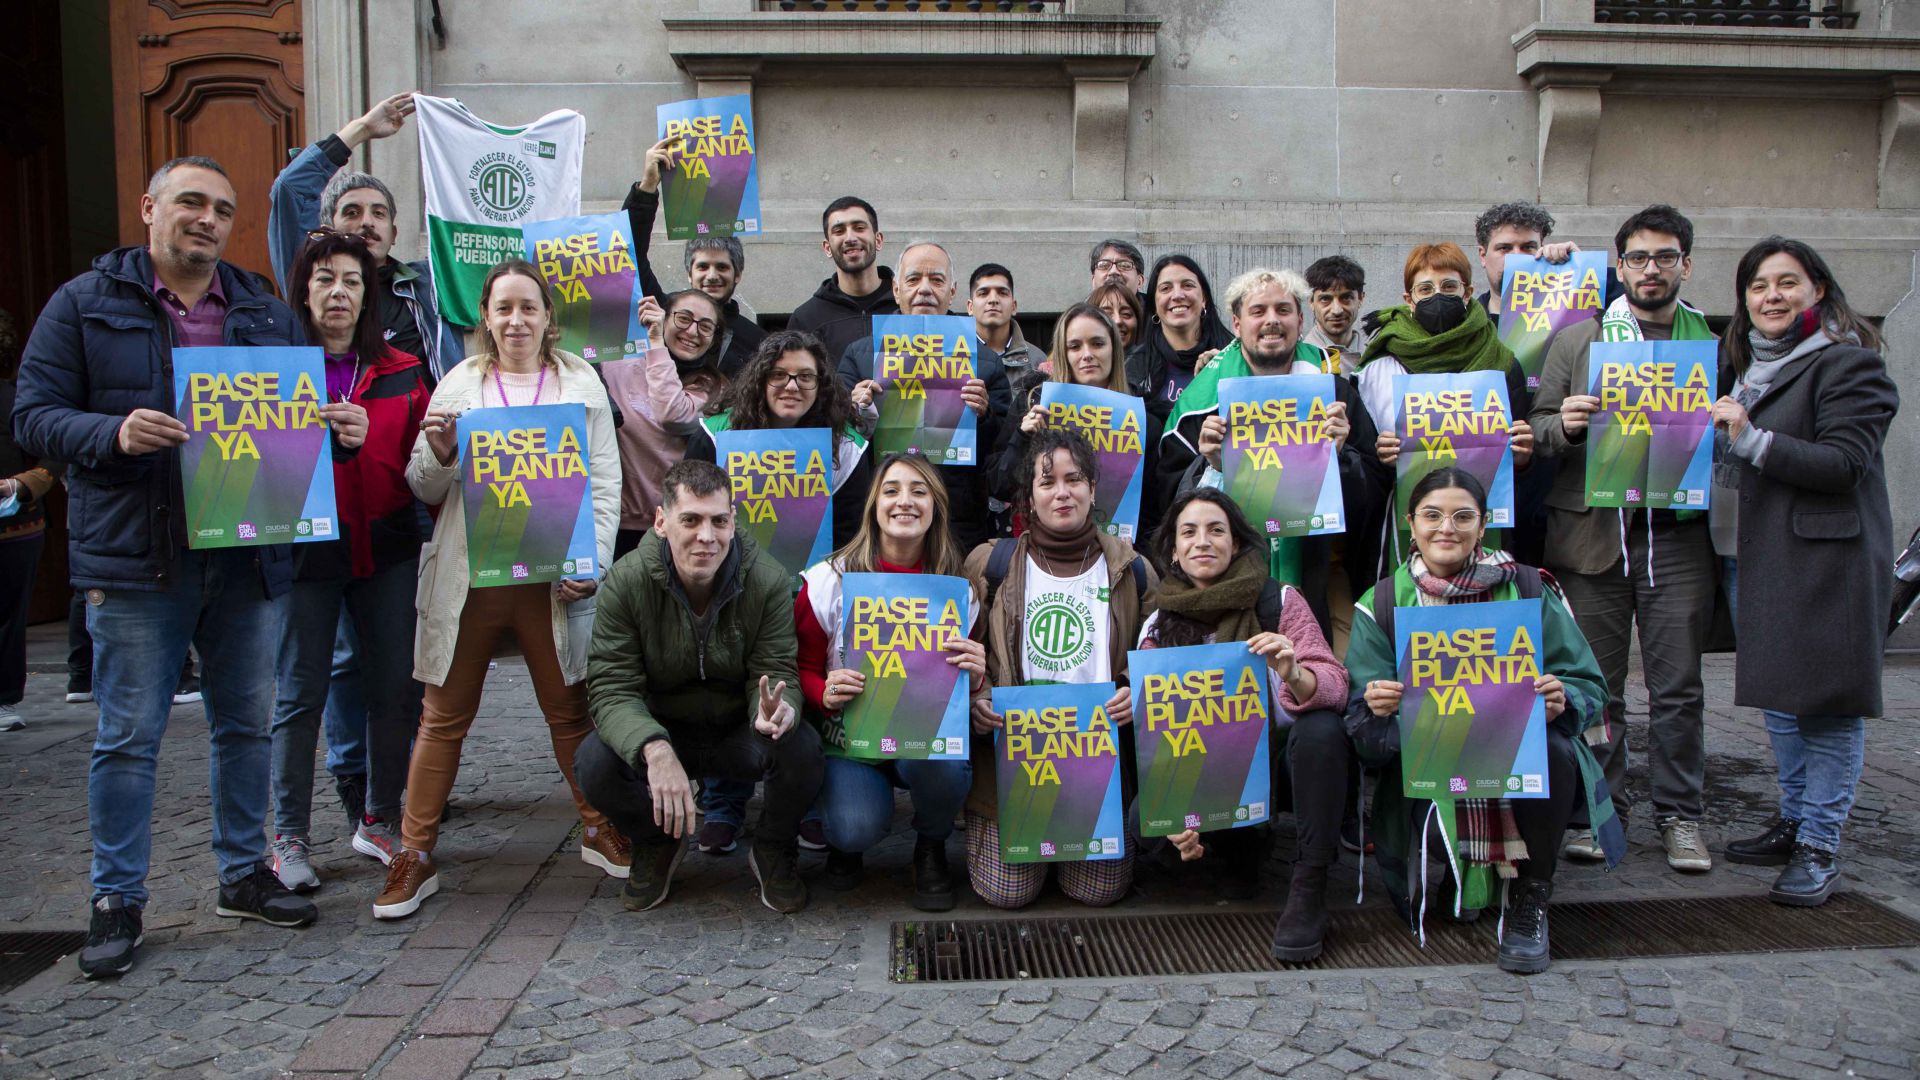 Proyecto de Ley para terminar con la precarización en la Ciudad de Buenos Aires